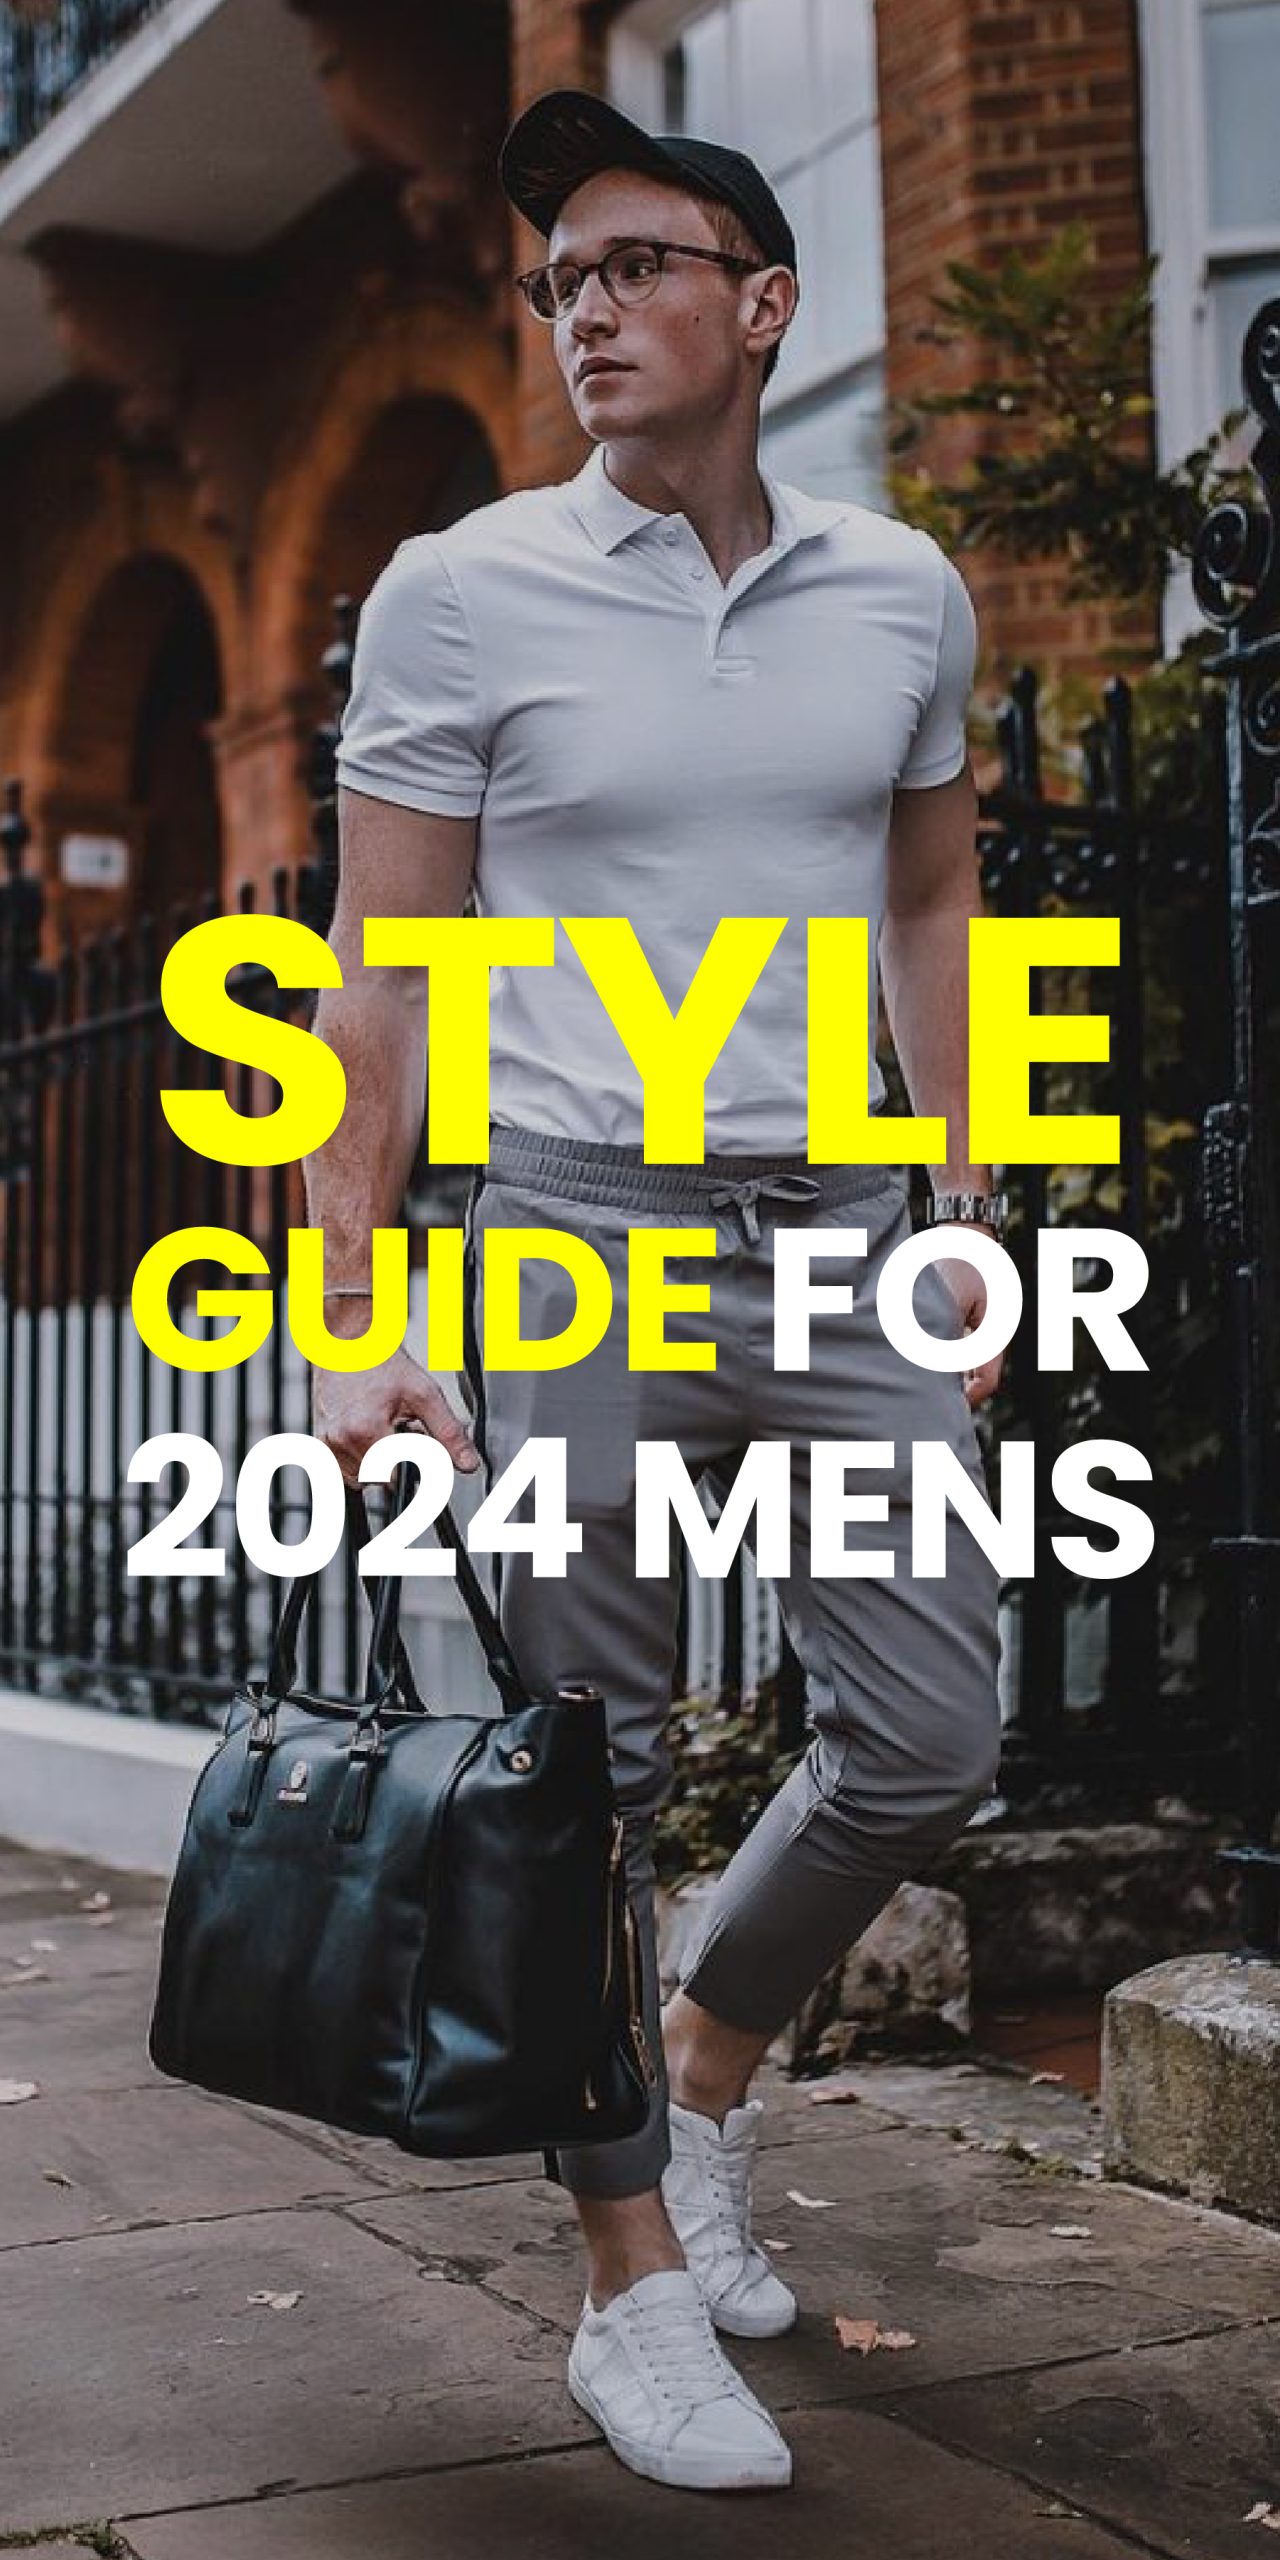 STYEL GUIDE FOR 2024 MENS